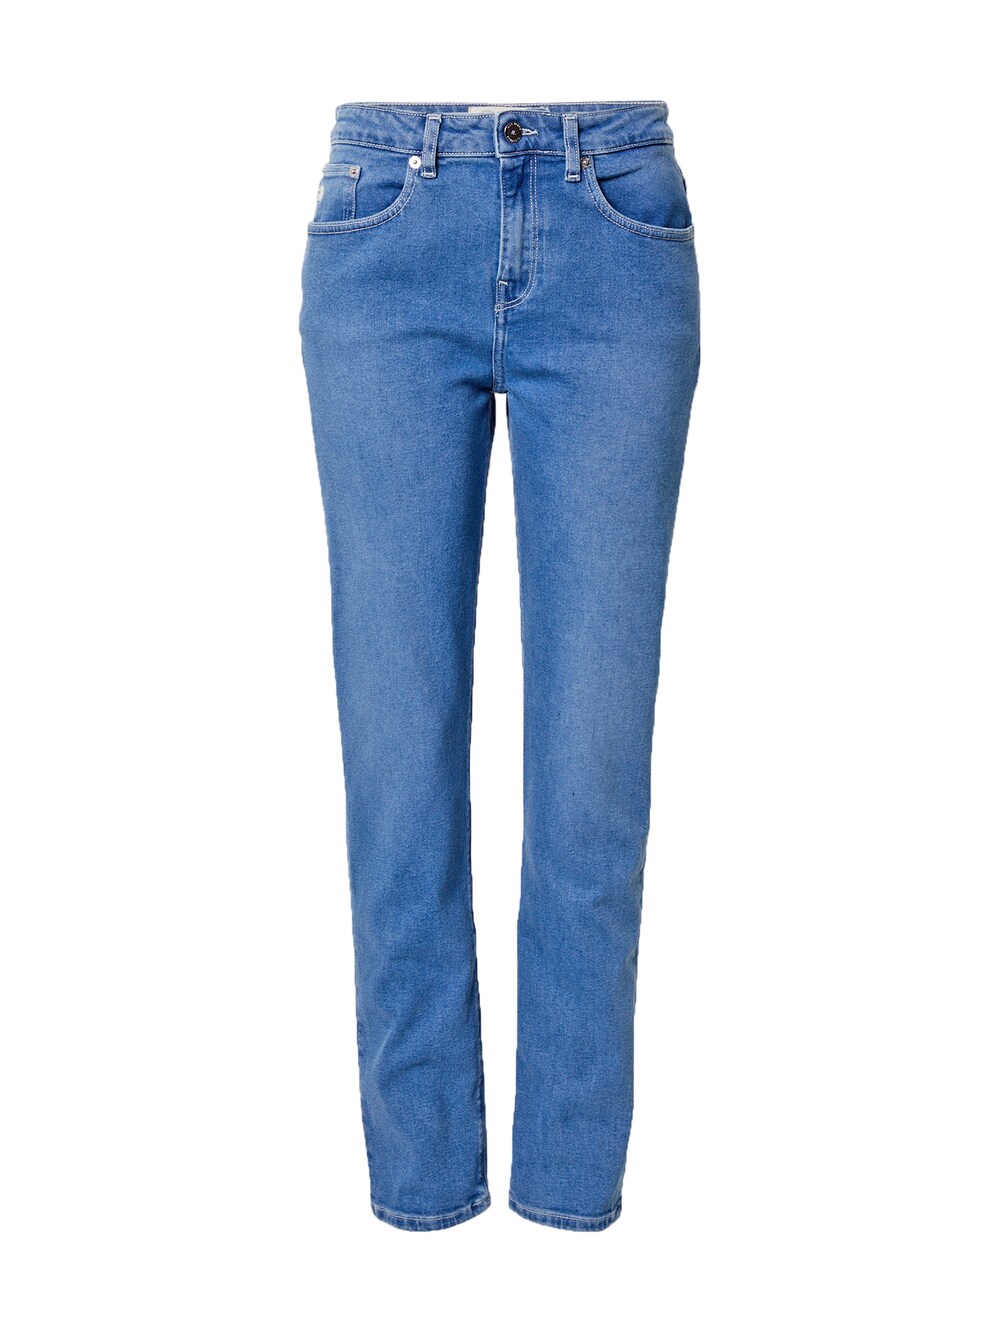 Обычные джинсы Mud Jeans Mimi, синий